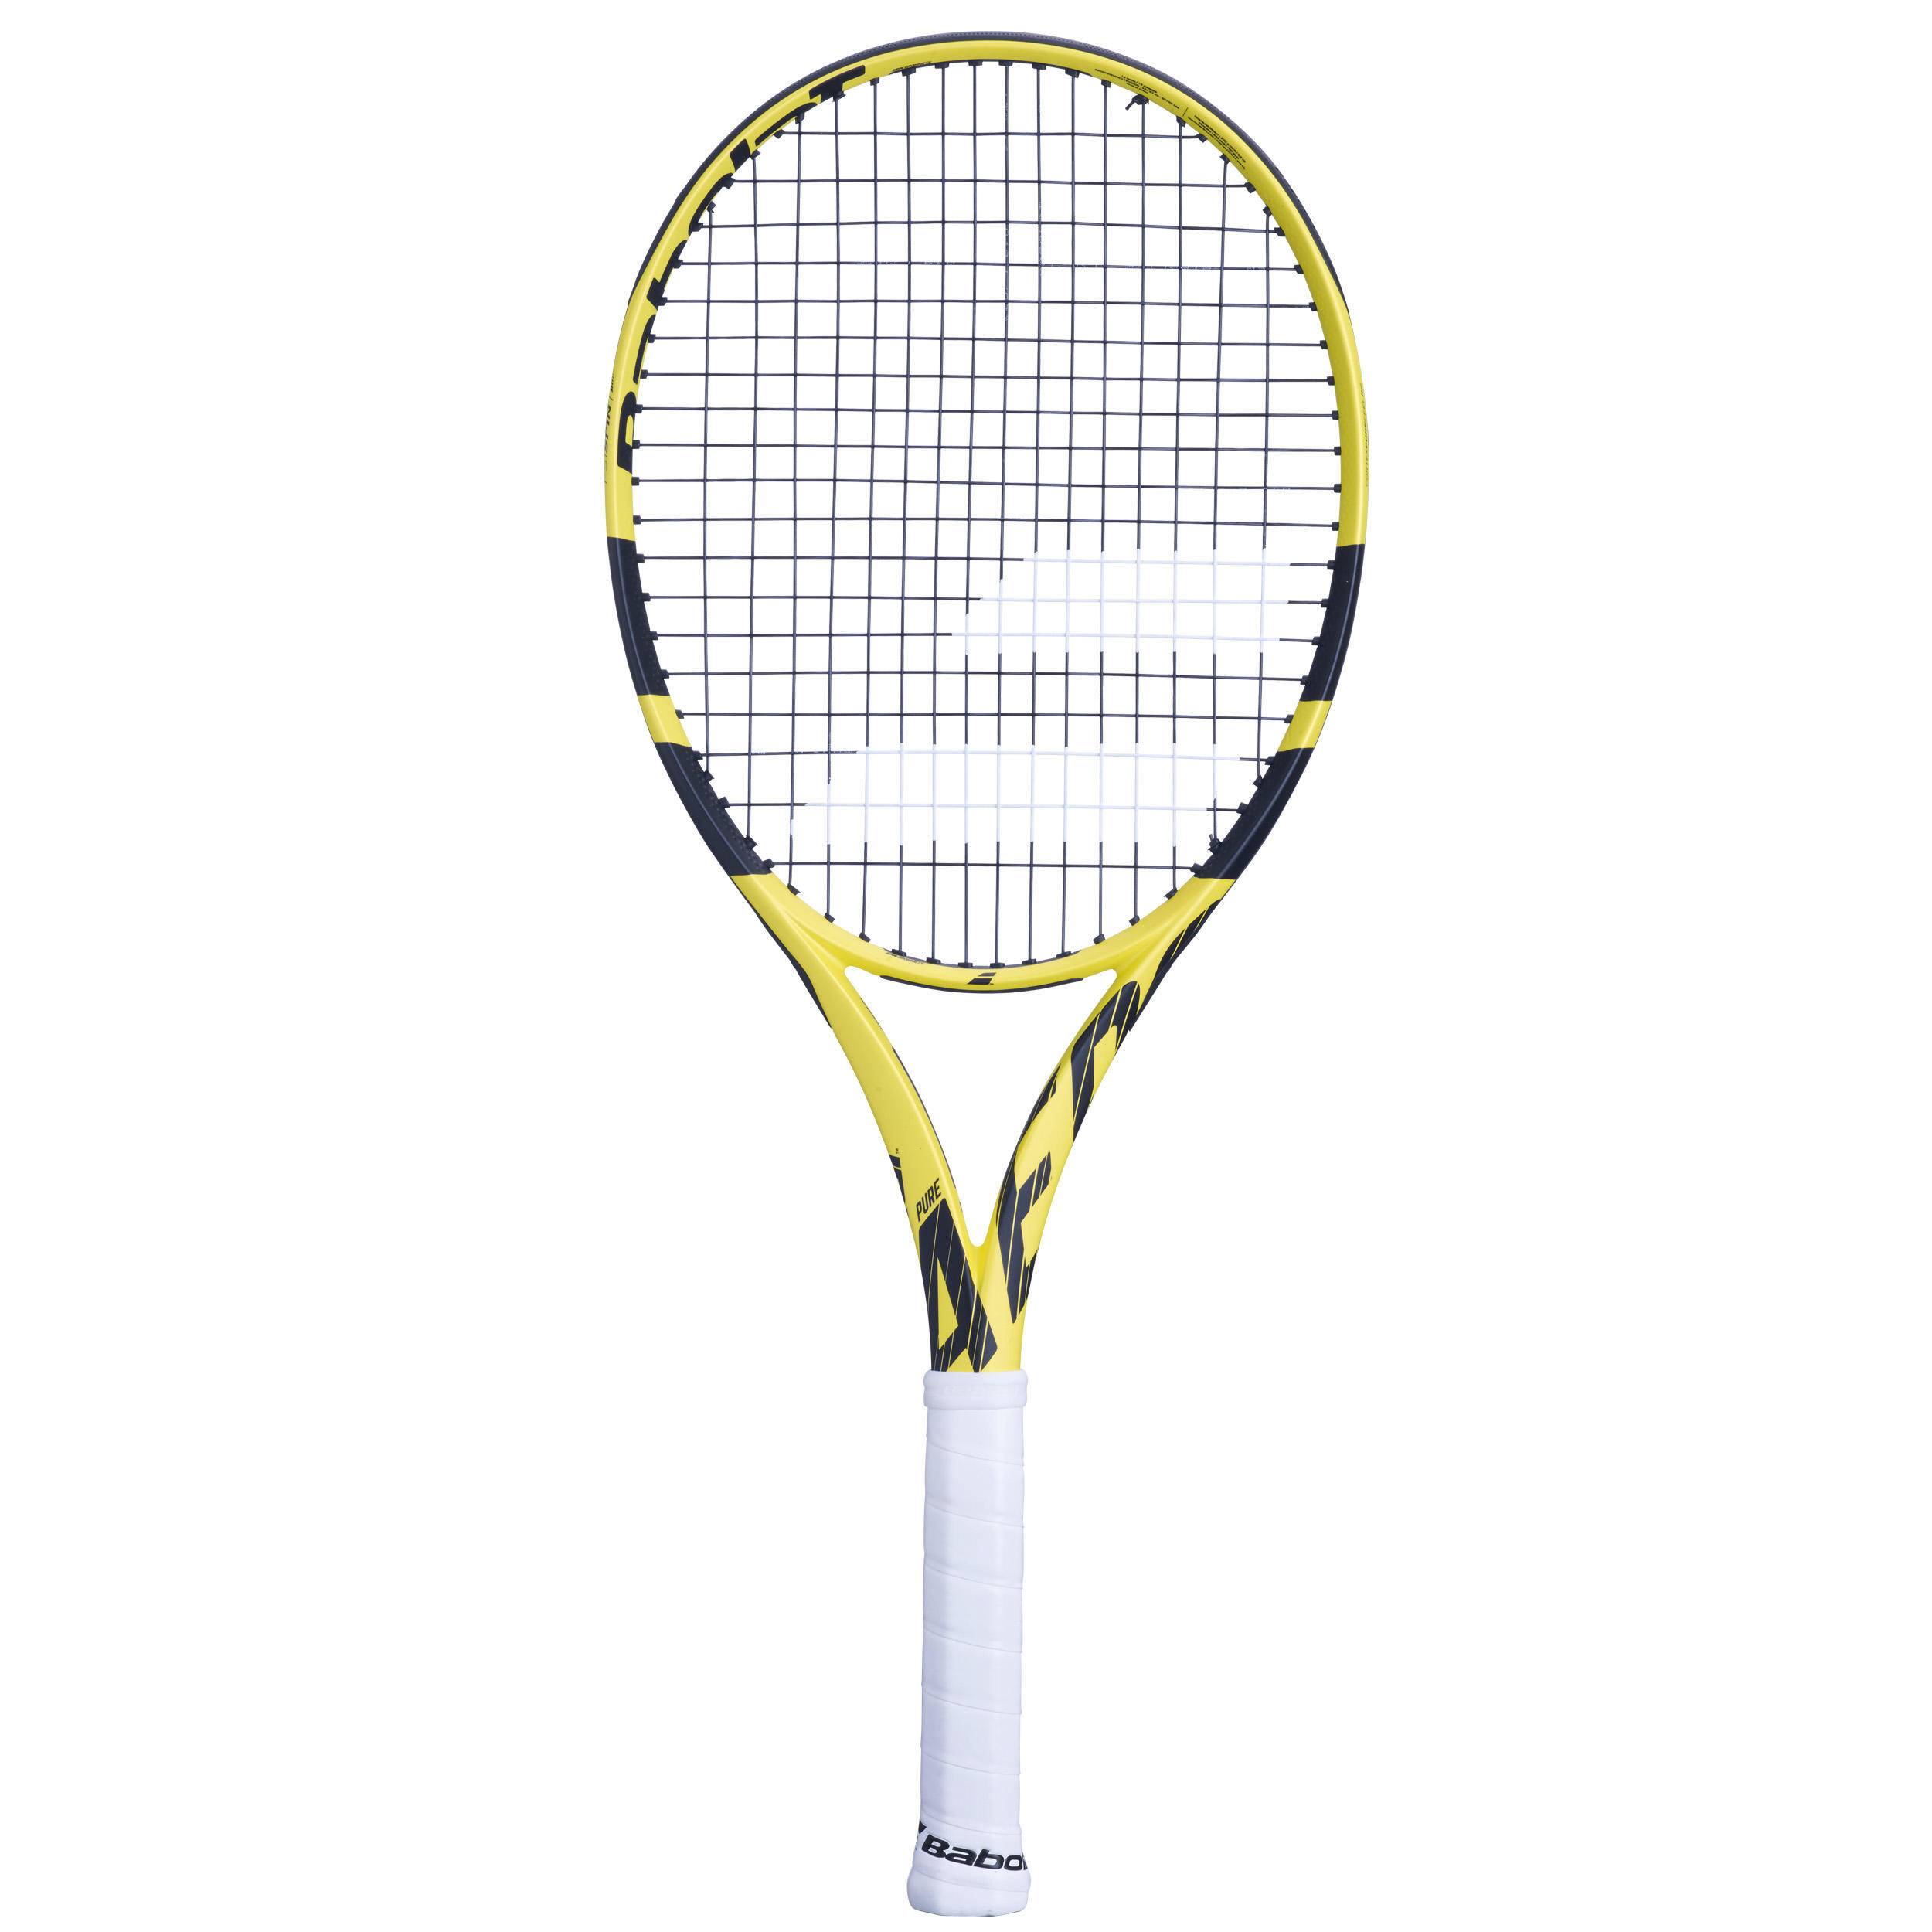 Теннисная ракетка Babolat - Pure Aero 300 г, темно-серый/неоново-желтый/черный ракетка для большого тенниса babolat pure aero lite желтый